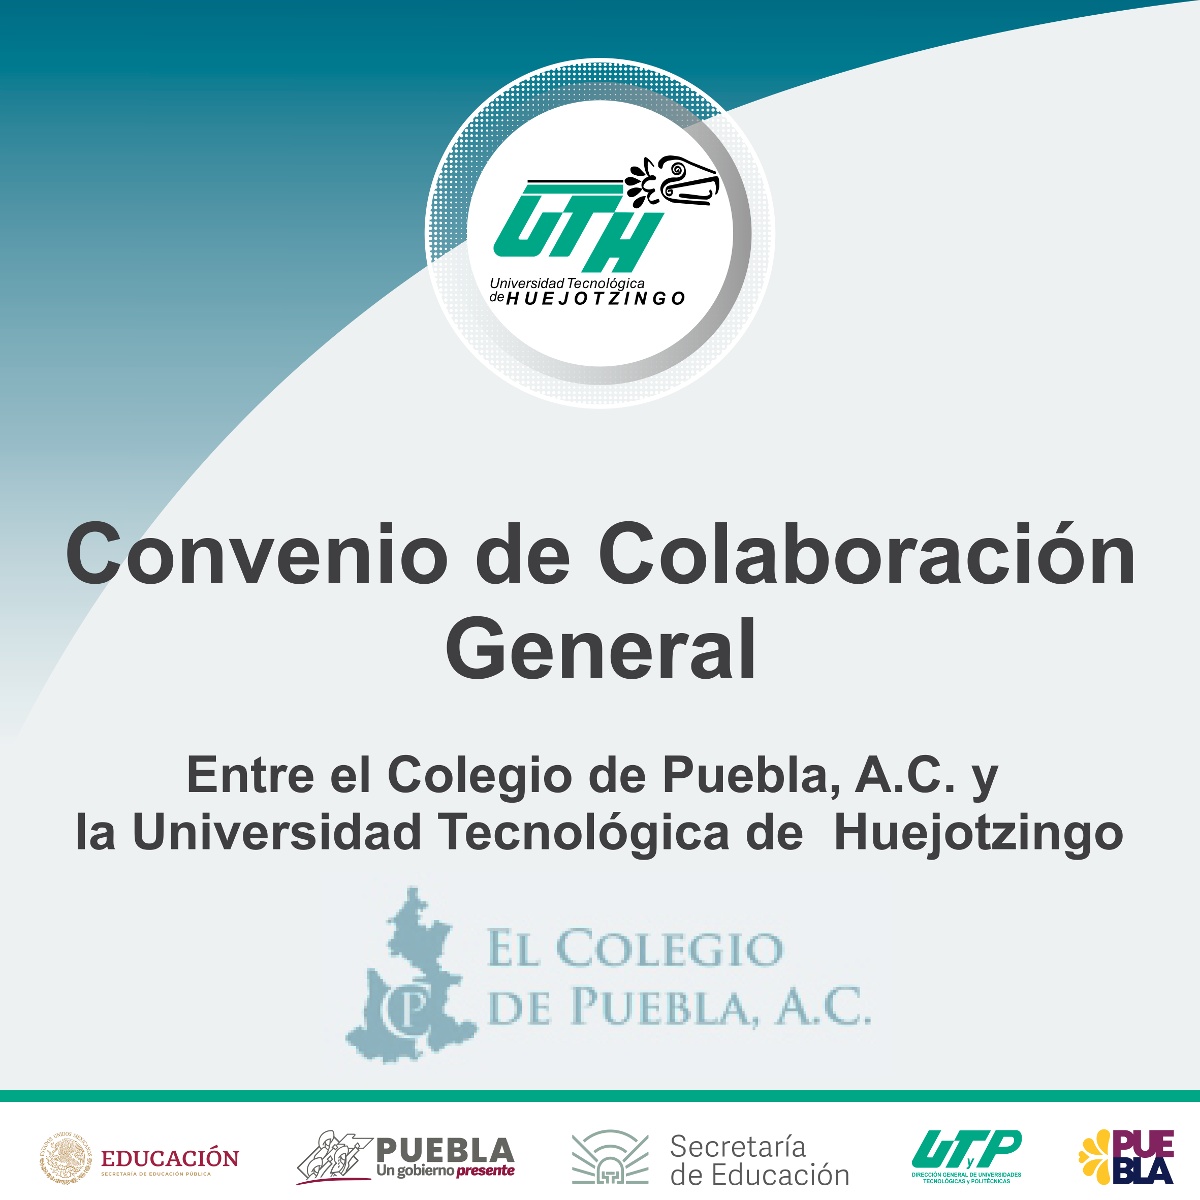 Convenio de Colaboración General entre el Colegio de Puebla, A.C. y la Universidad Tecnológica de Huejotzingo